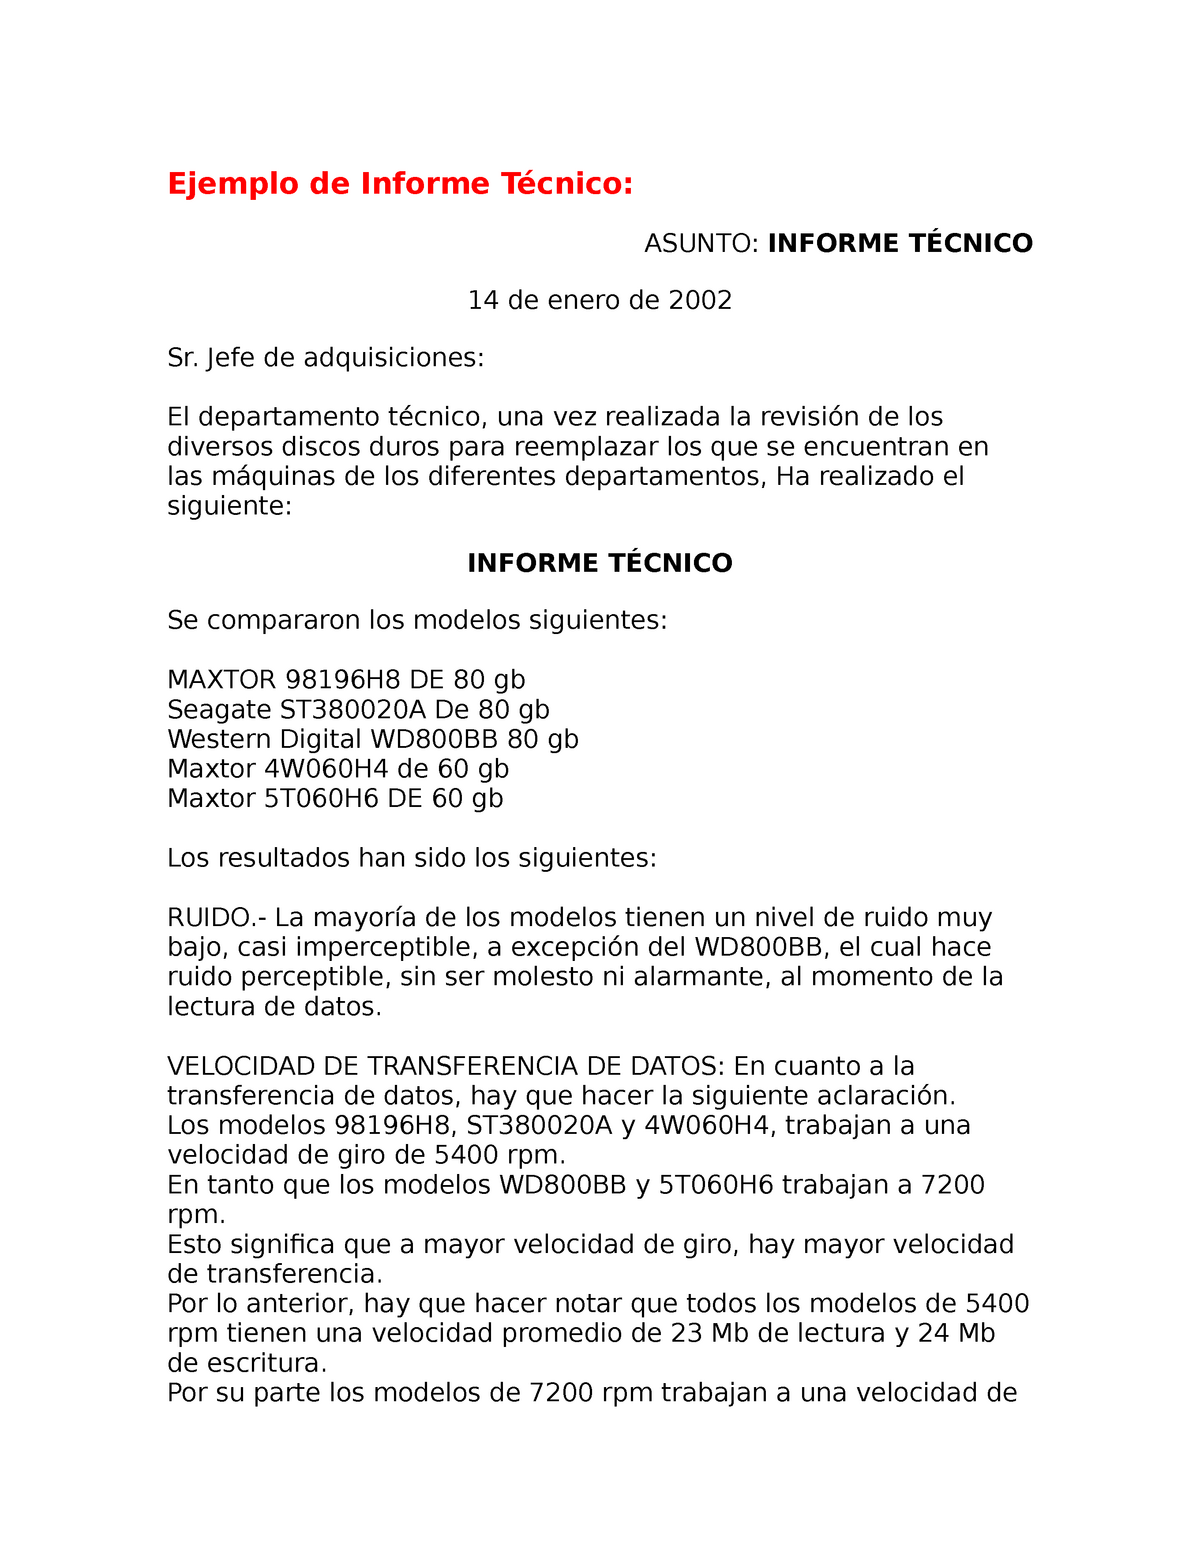 Ejemplo de informe laboral - Ejemplo de Informe Técnico: ASUNTO: INFORME  TÉCNICO 14 de enero de 2002 - Studocu